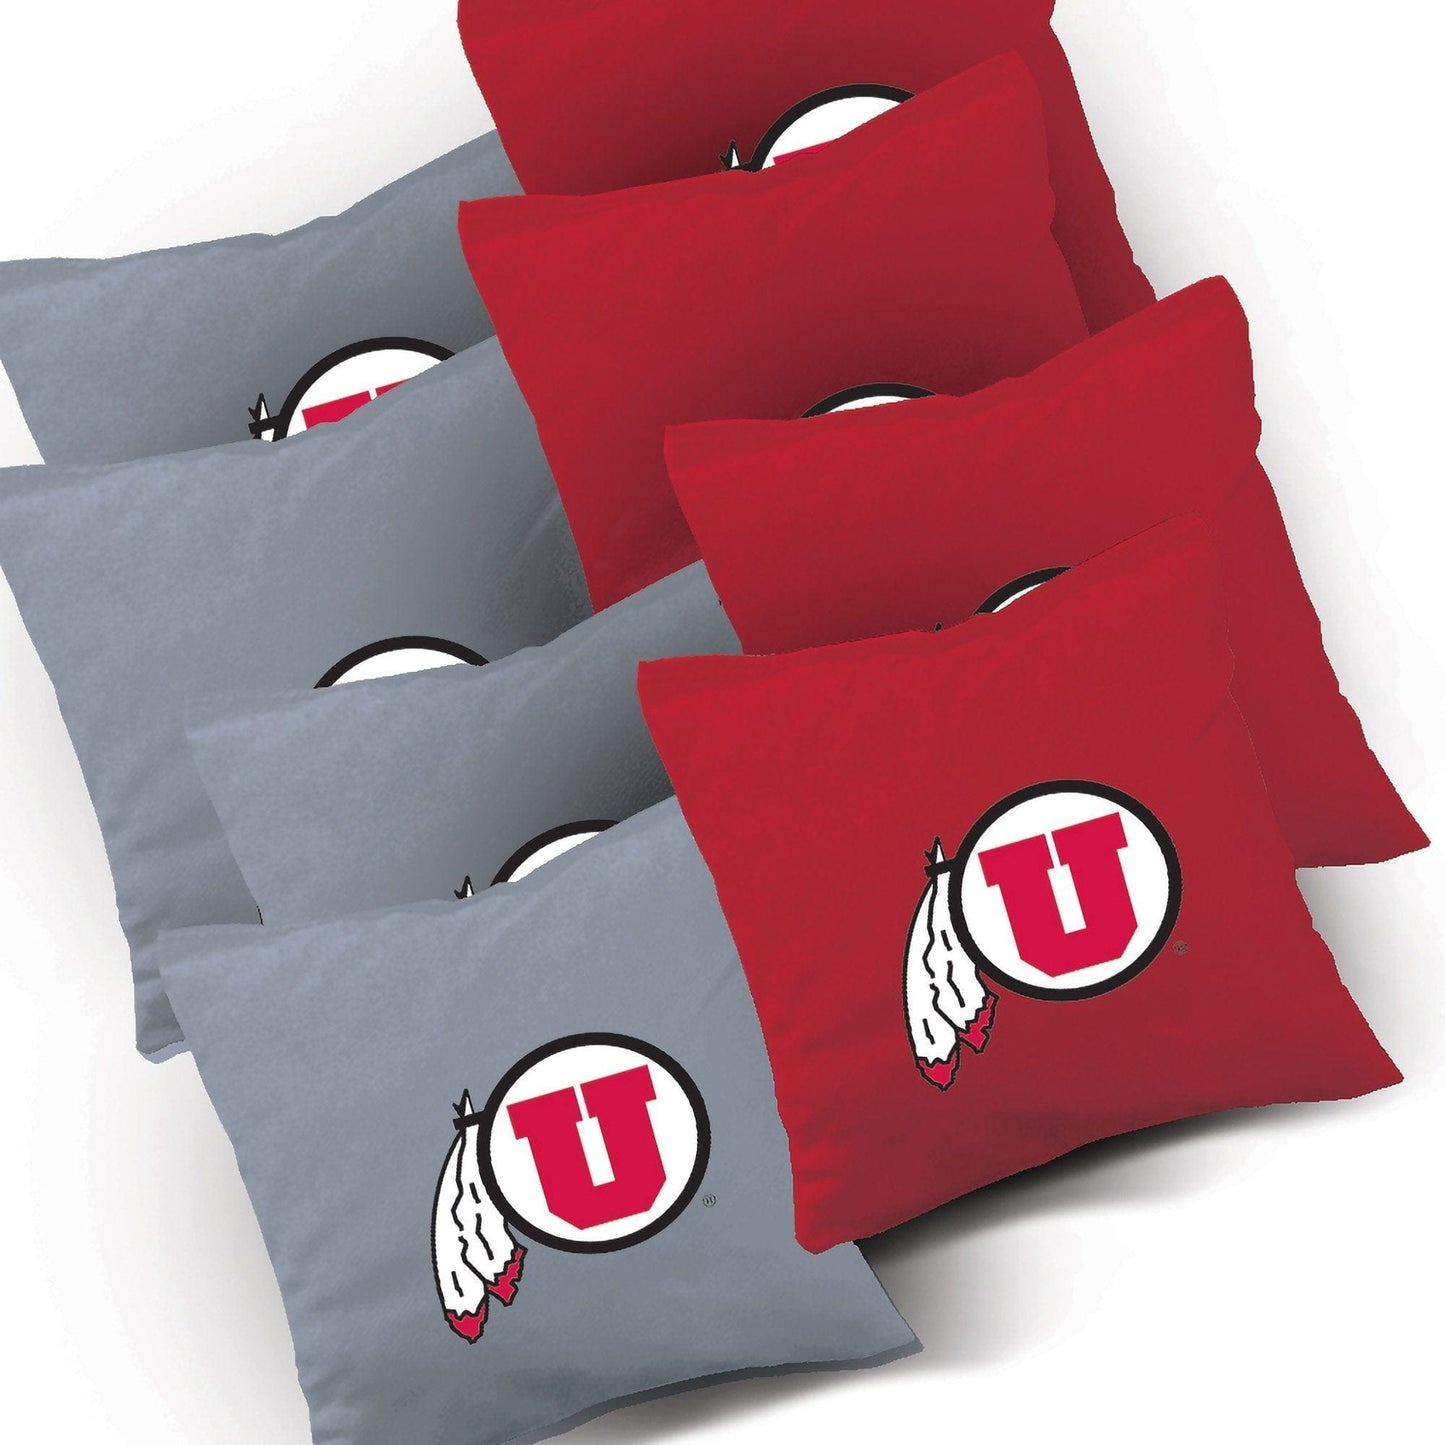 Utah Triangle team logo cornhole